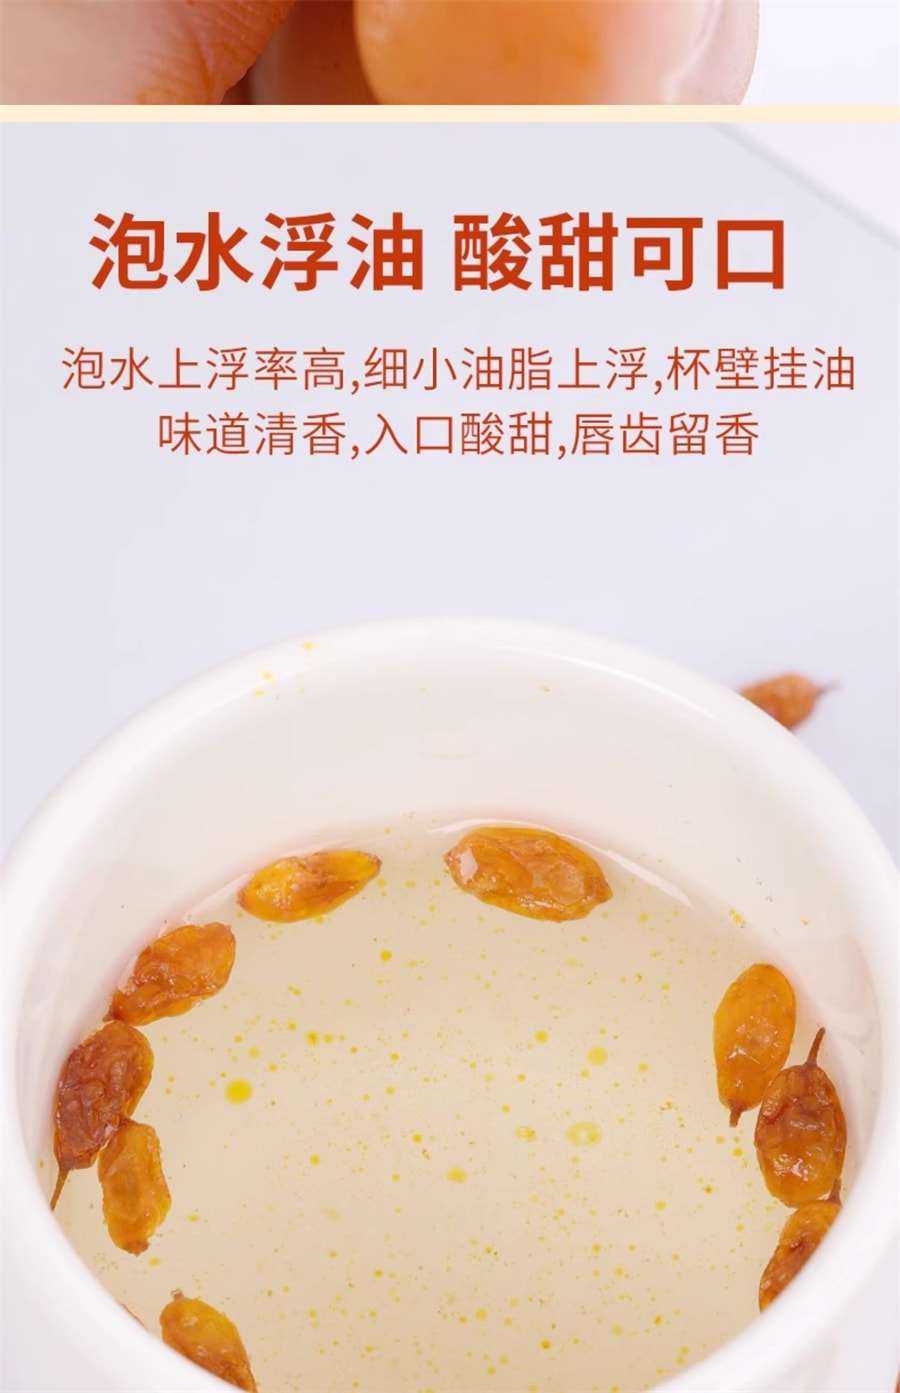 【中国直邮】岷农人 沙棘果250g正品新疆沙棘干果沙棘茶野生颗粒